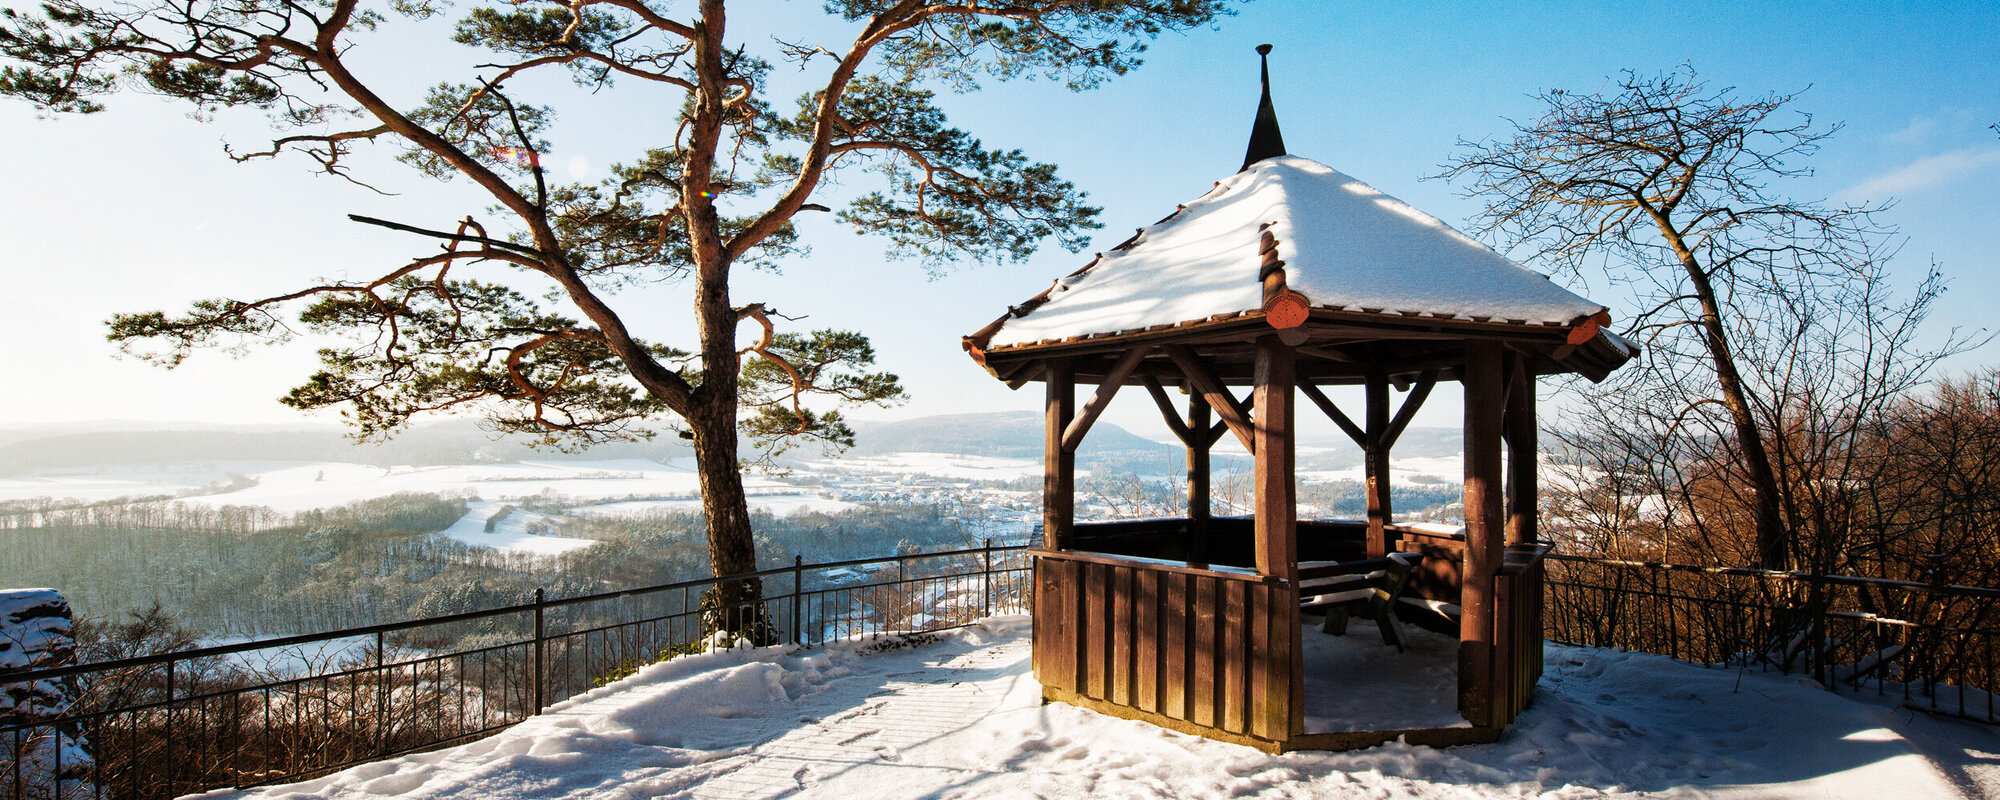 Auf einer Aussichtsplattform steht ein schneebedeckter Holzpavillon neben einem Nadelbaum. Die Plattform ist von einem Metallgeländer eingefasst.